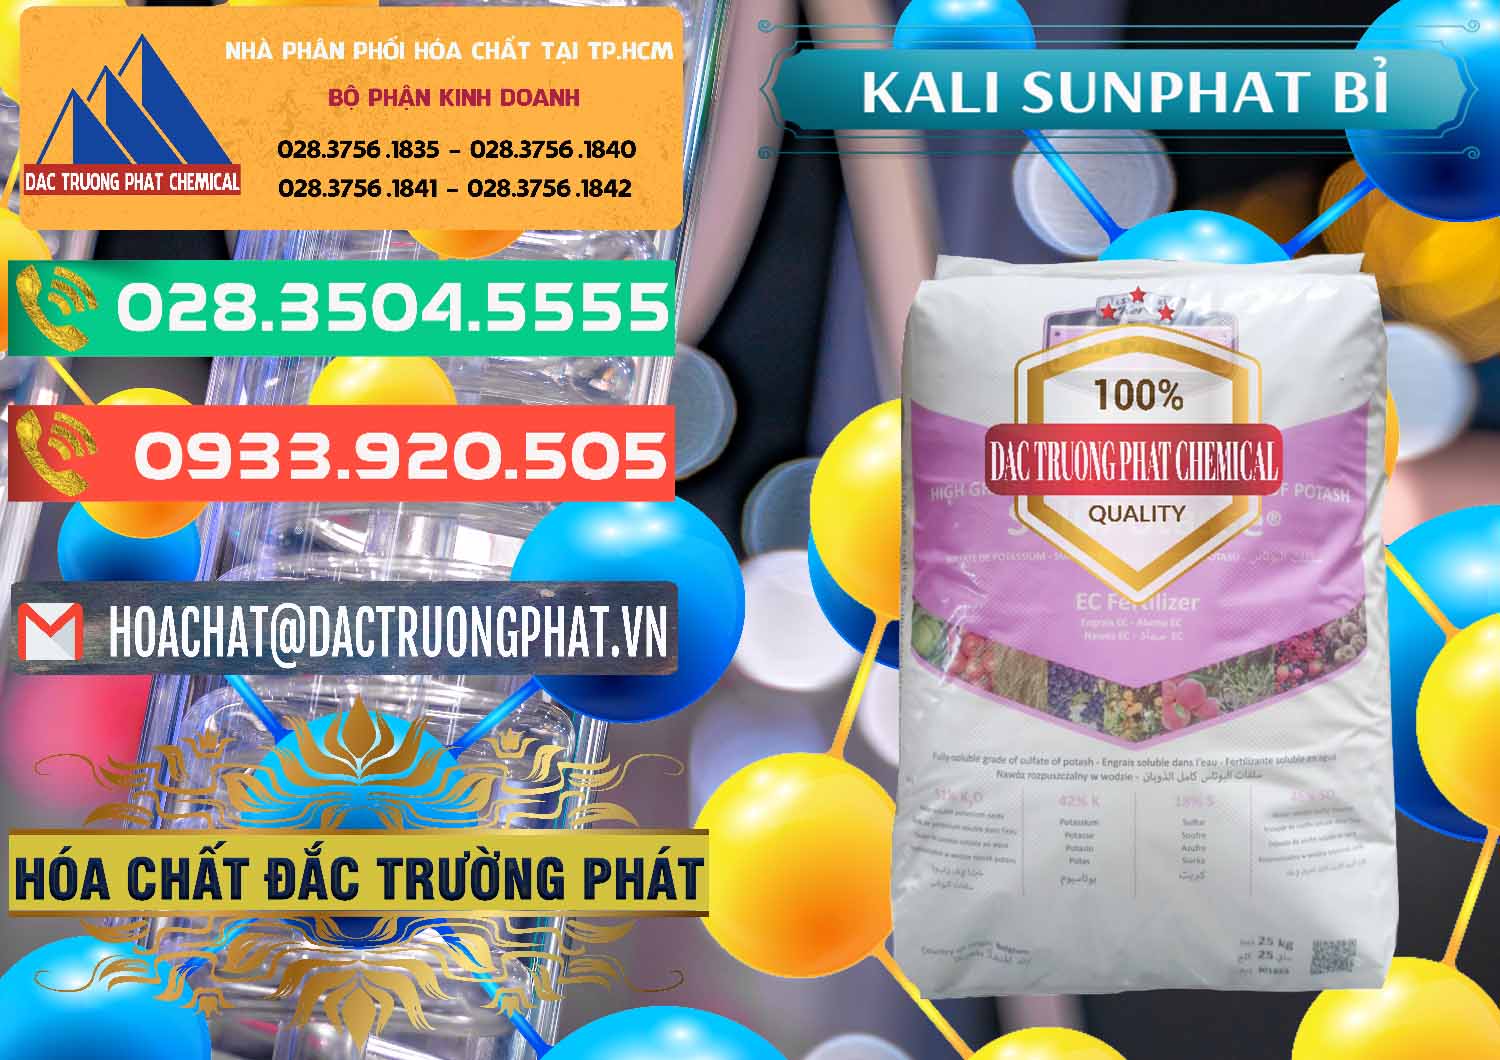 Chuyên kinh doanh - bán Kali Sunphat – K2SO4 Bỉ Belgium - 0406 - Nhà cung cấp & phân phối hóa chất tại TP.HCM - congtyhoachat.com.vn